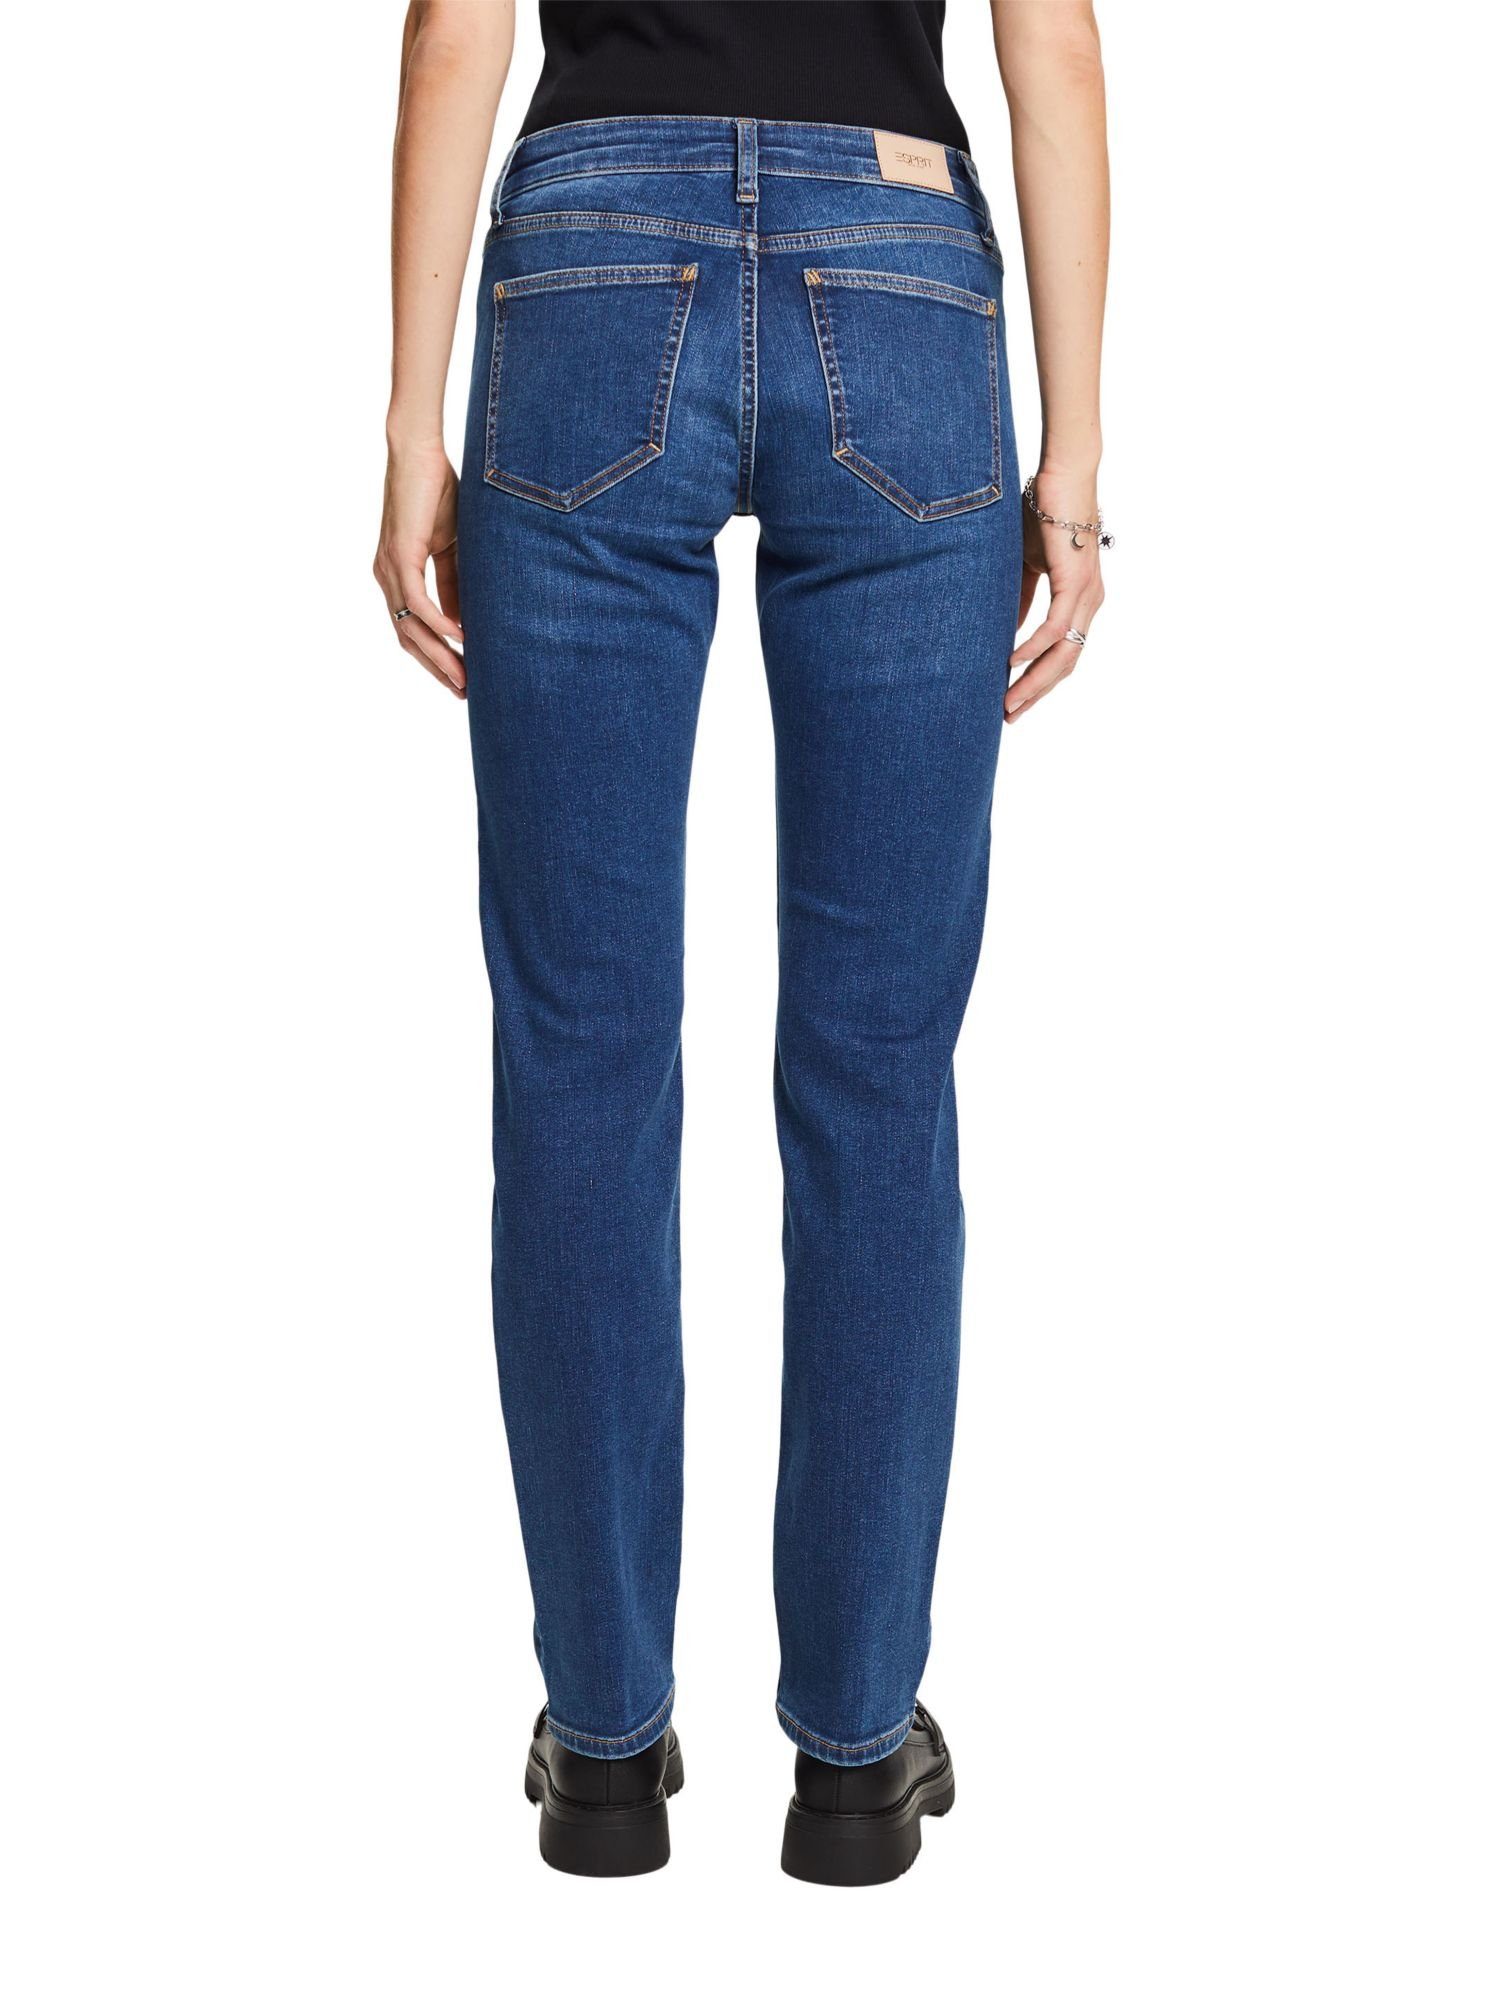 Esprit Stretchjeans Baumwollmix WASHED Straight-Jeans MEDIUM Bein, BLUE geradem mit